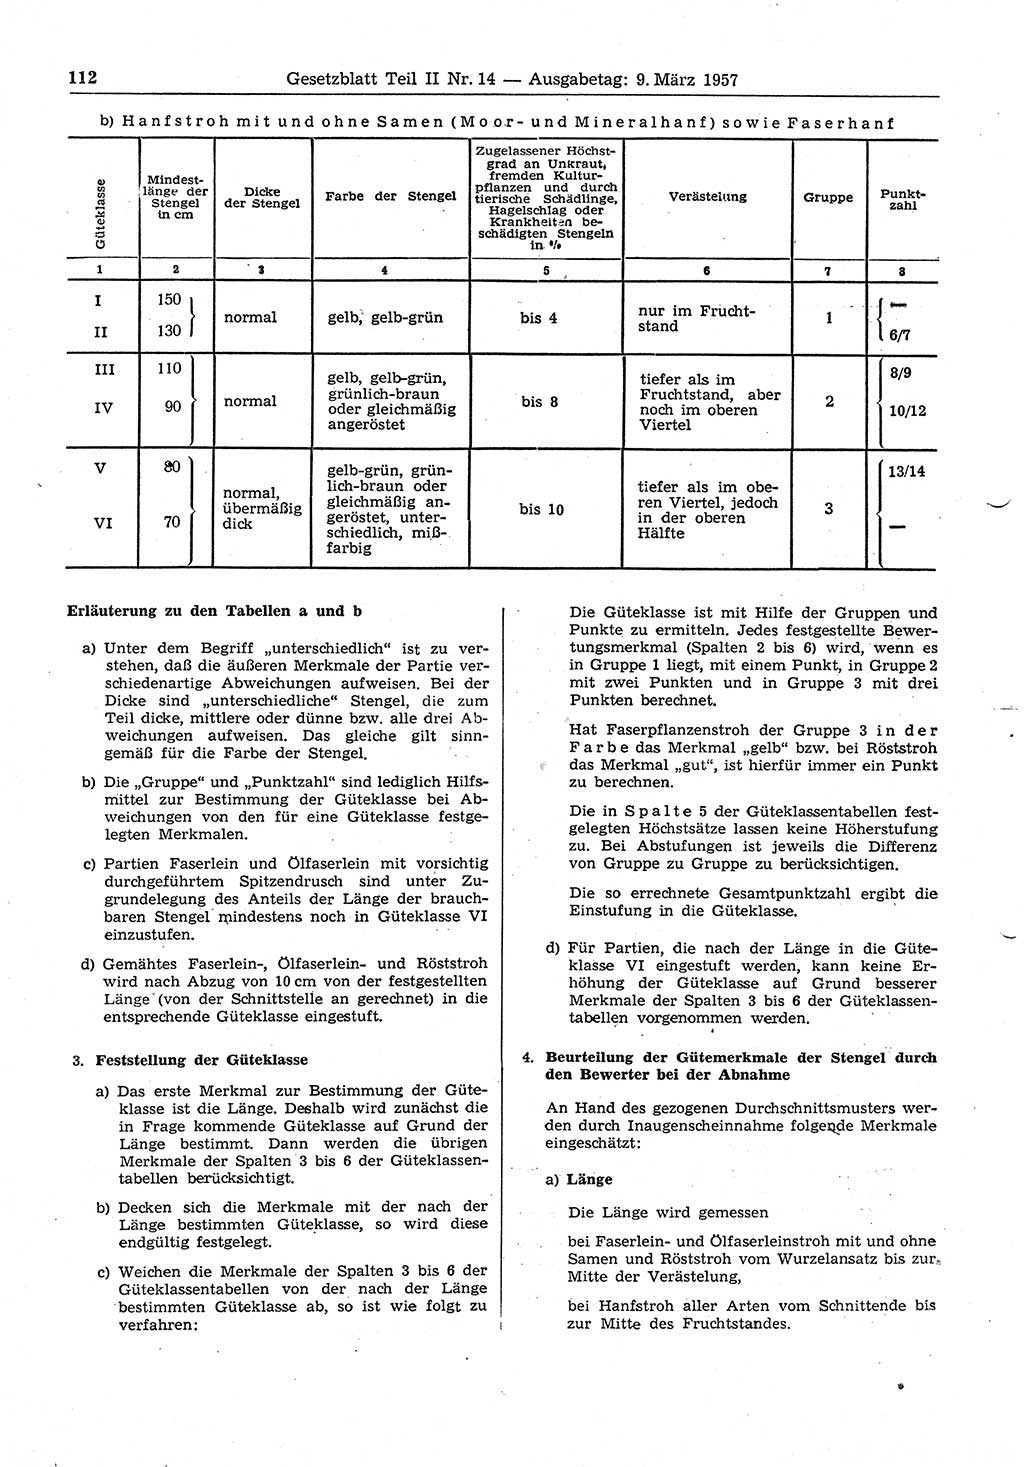 Gesetzblatt (GBl.) der Deutschen Demokratischen Republik (DDR) Teil ⅠⅠ 1957, Seite 112 (GBl. DDR ⅠⅠ 1957, S. 112)